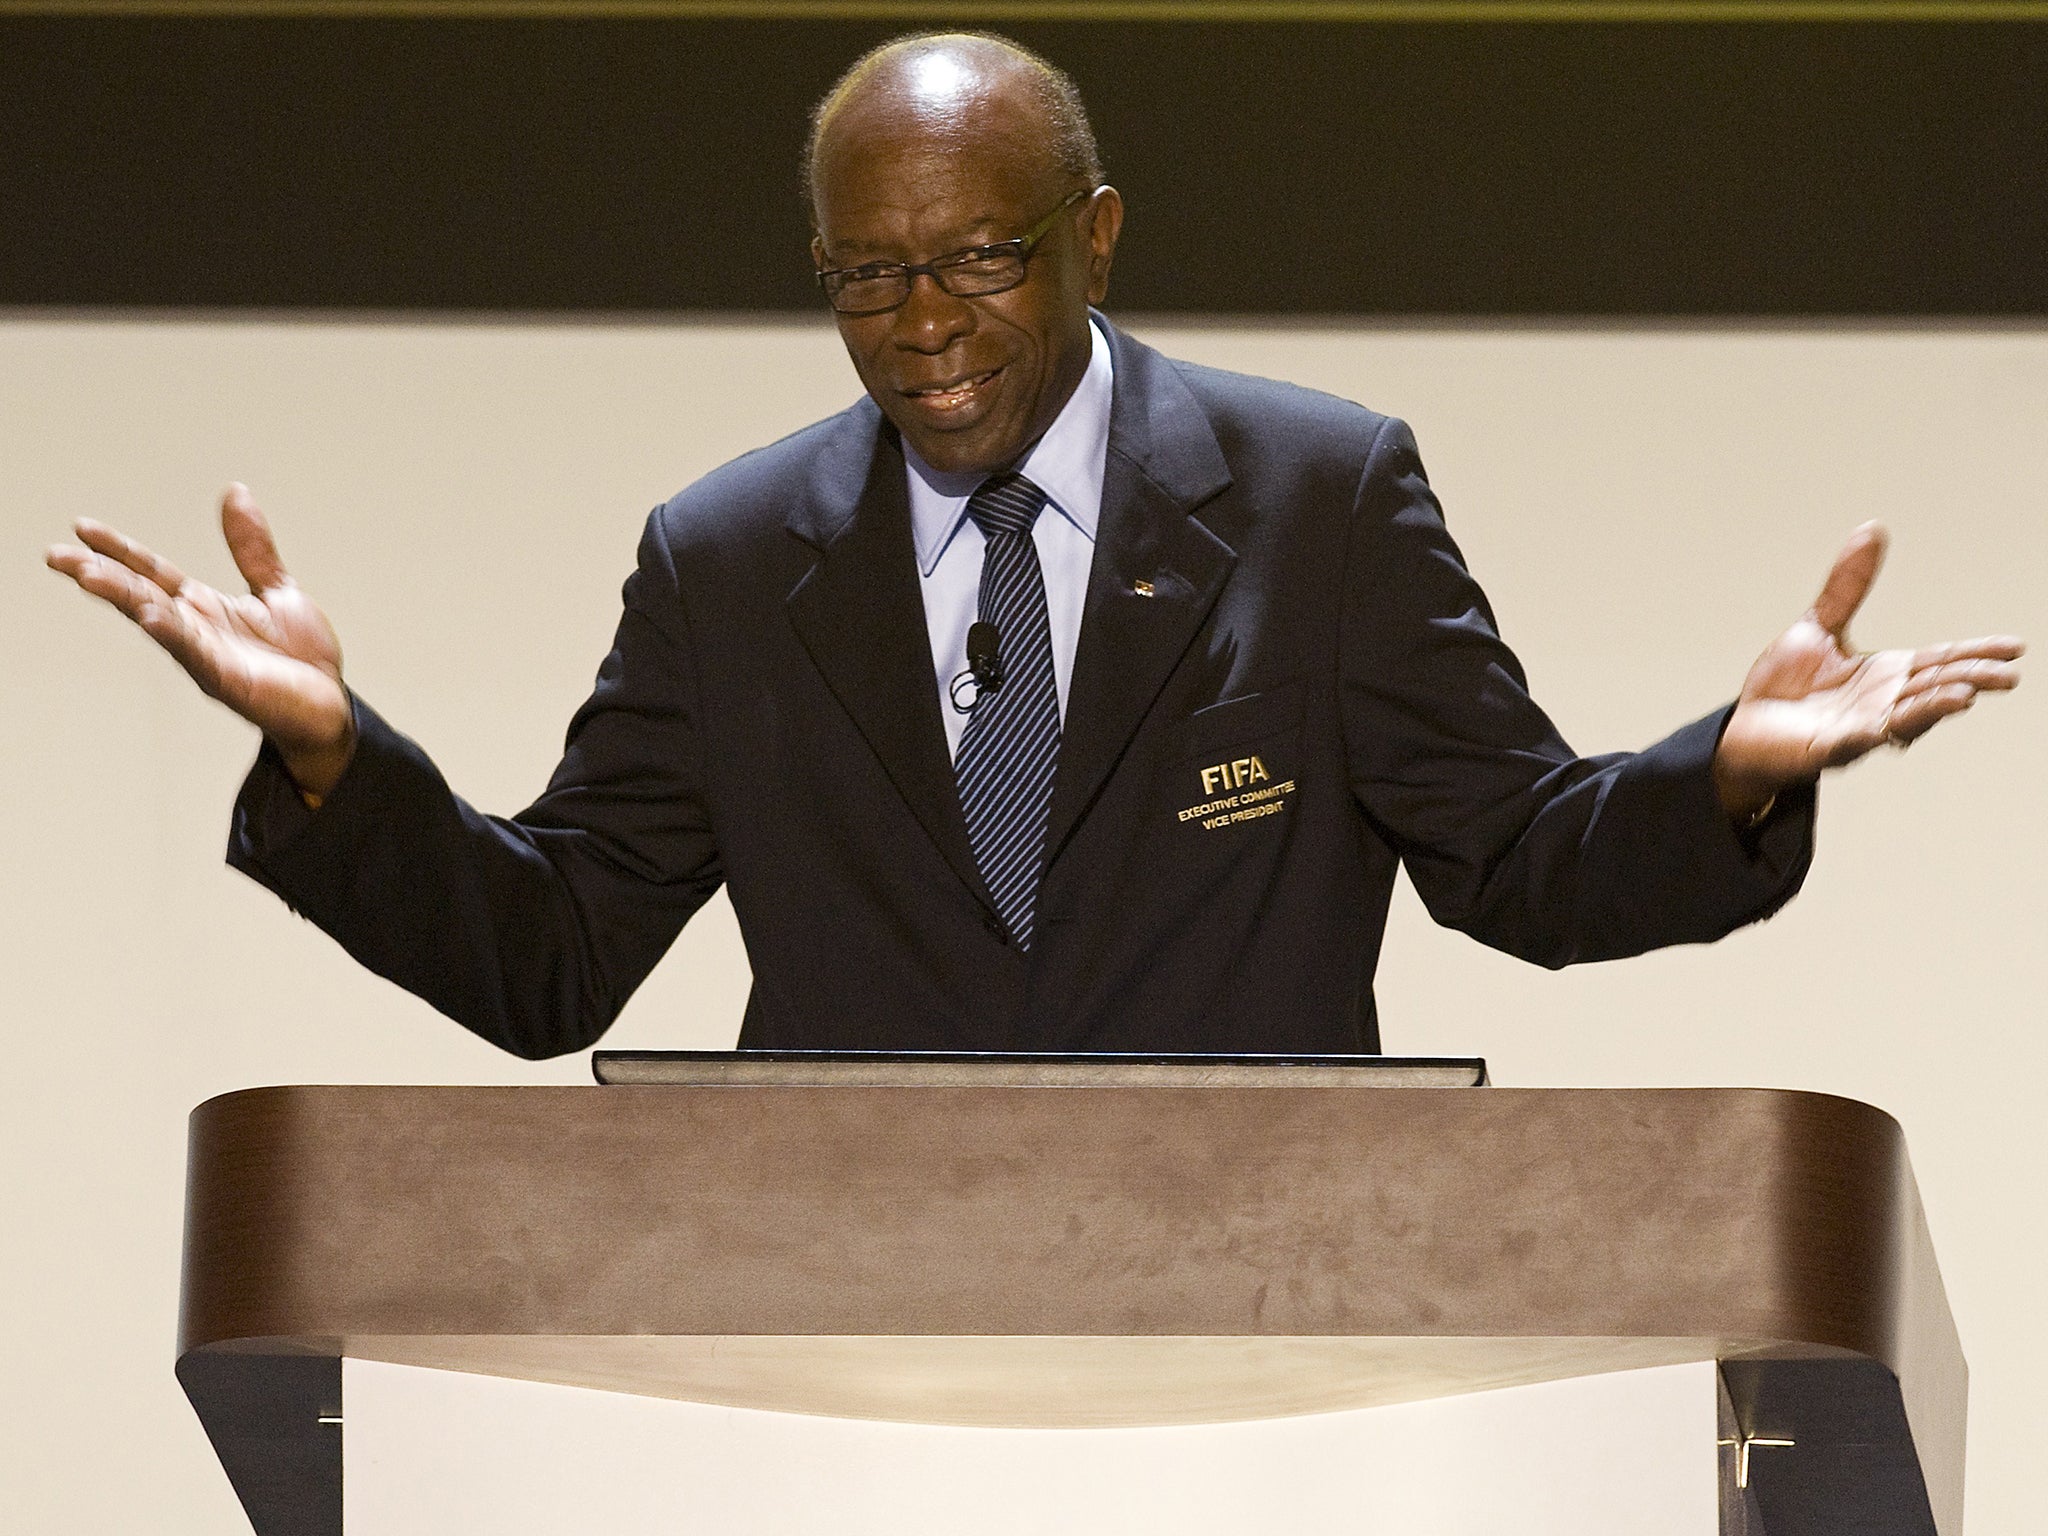 Former Fifa vice-president Jack Warner